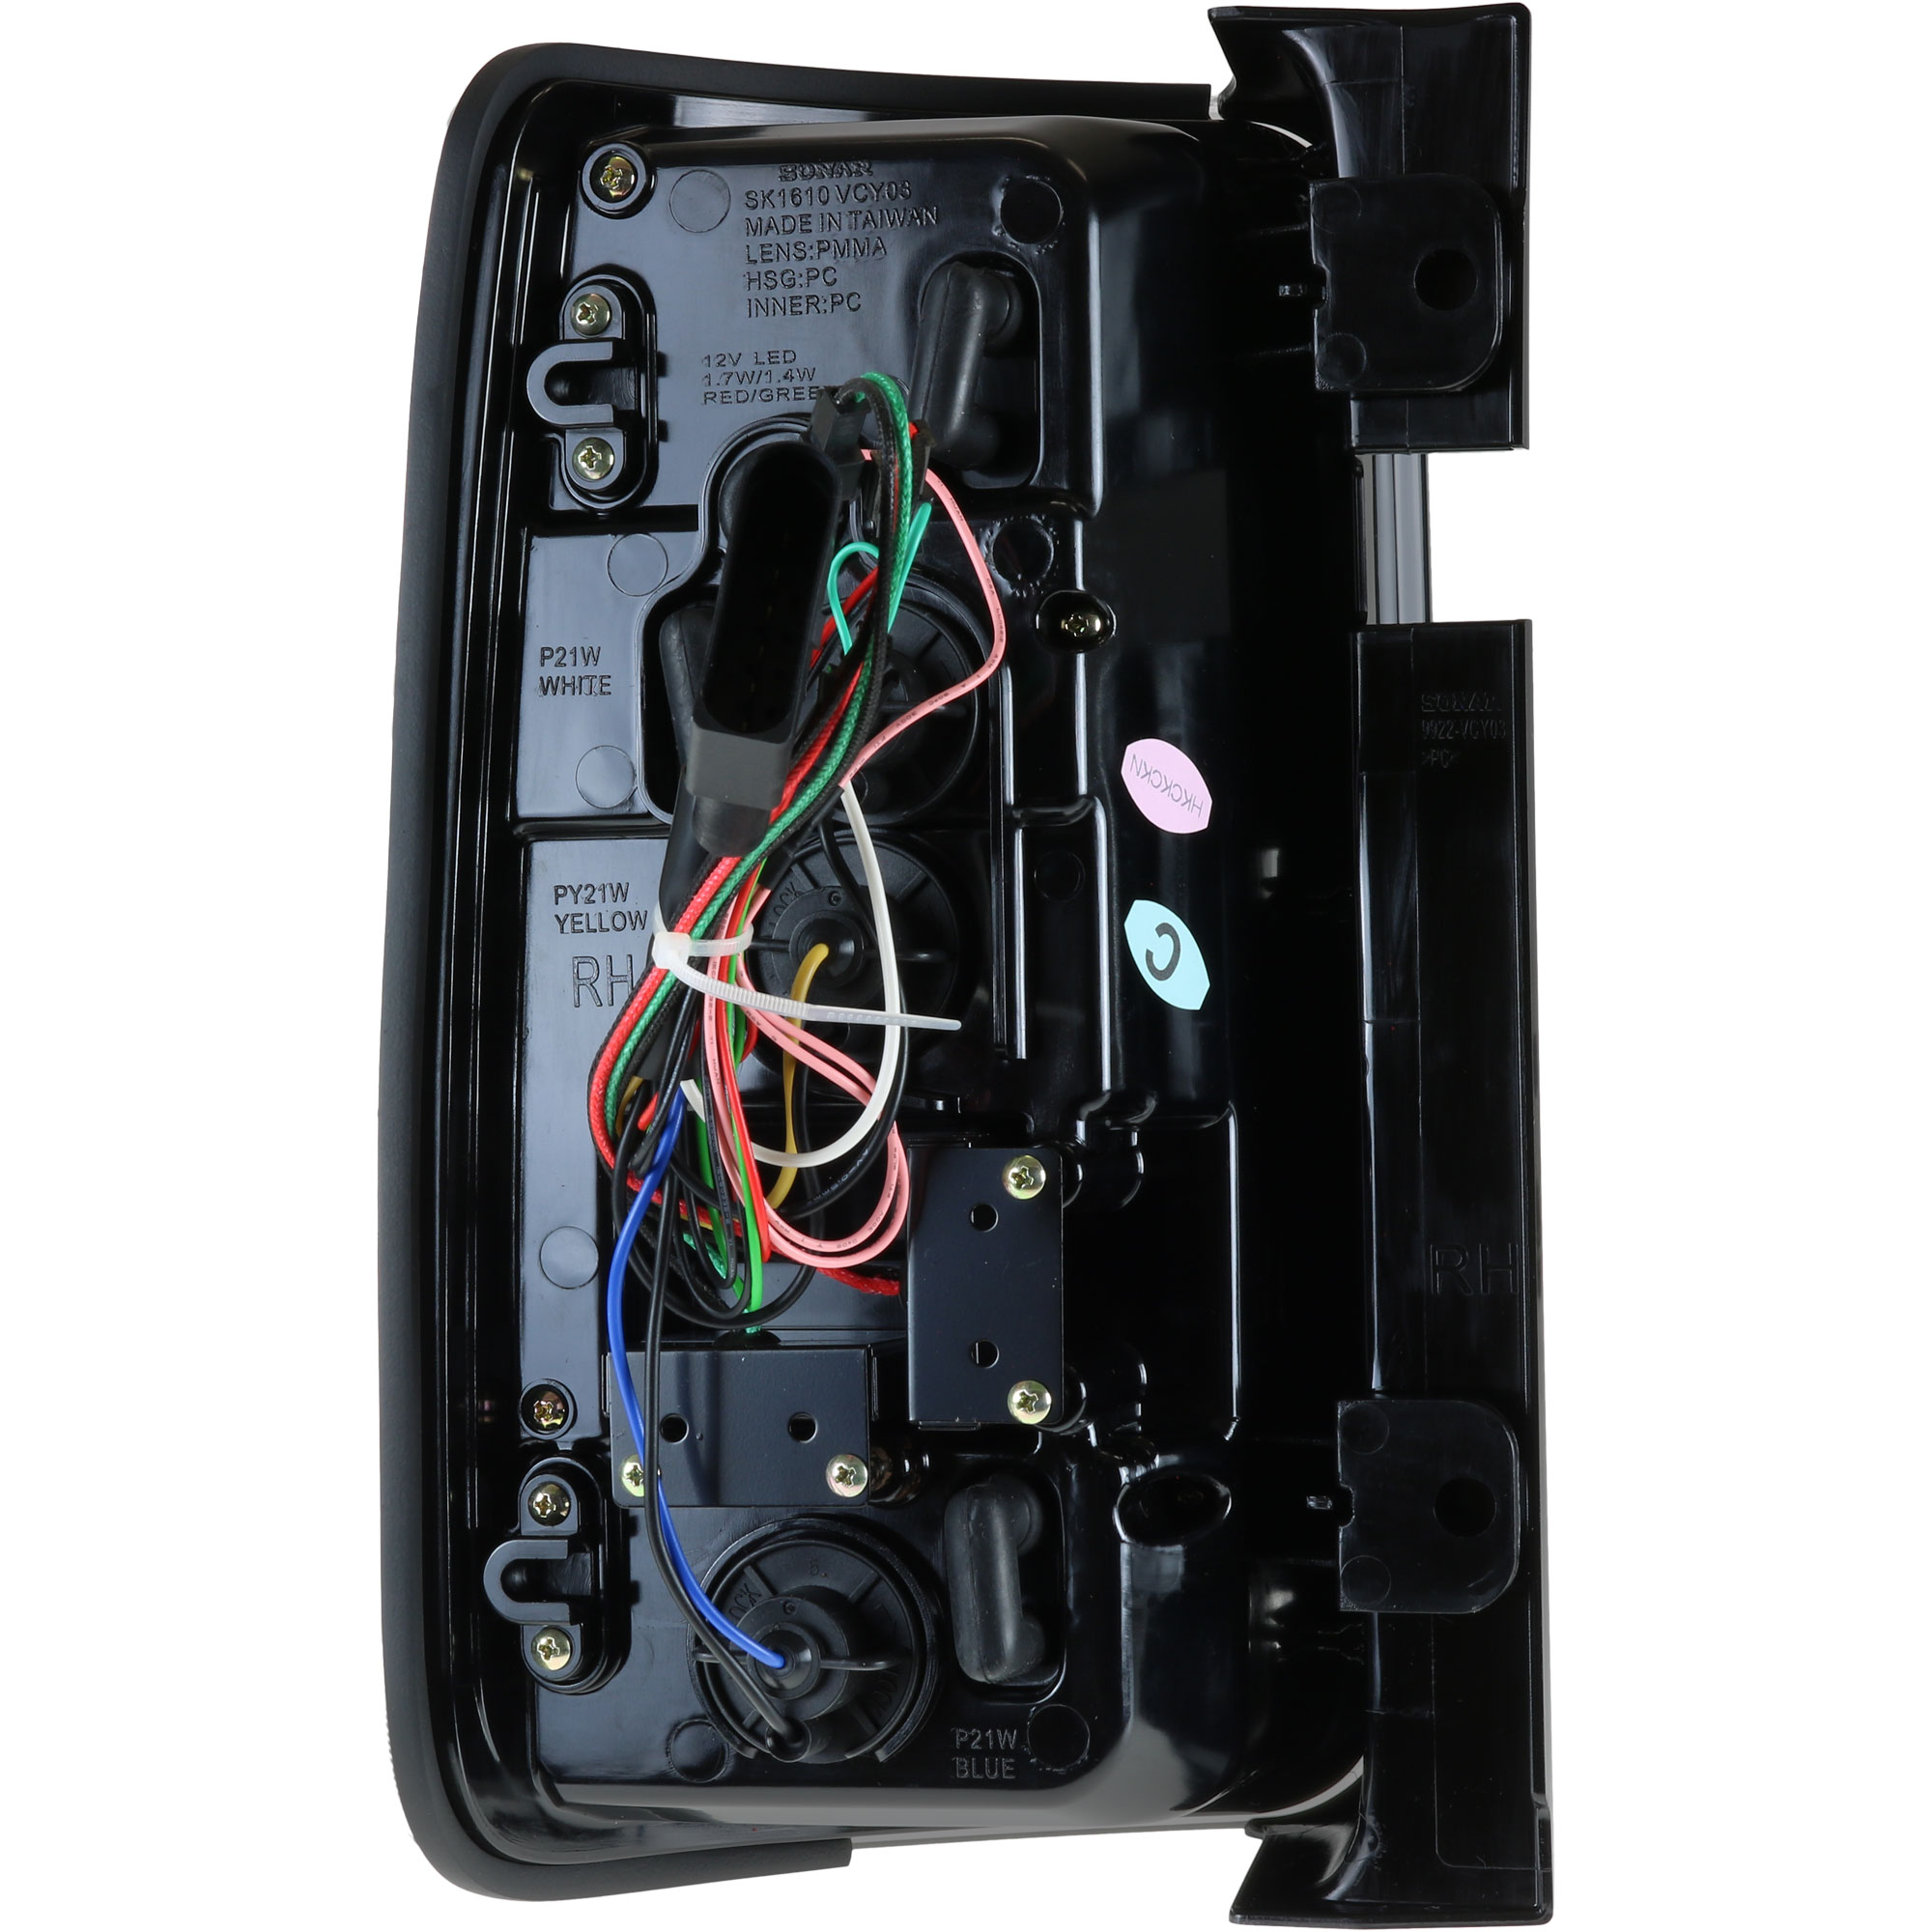 Rückleuchten Set LED Lightbar für VW Caddy Bj. 03-15 schwarz für Heckklappe